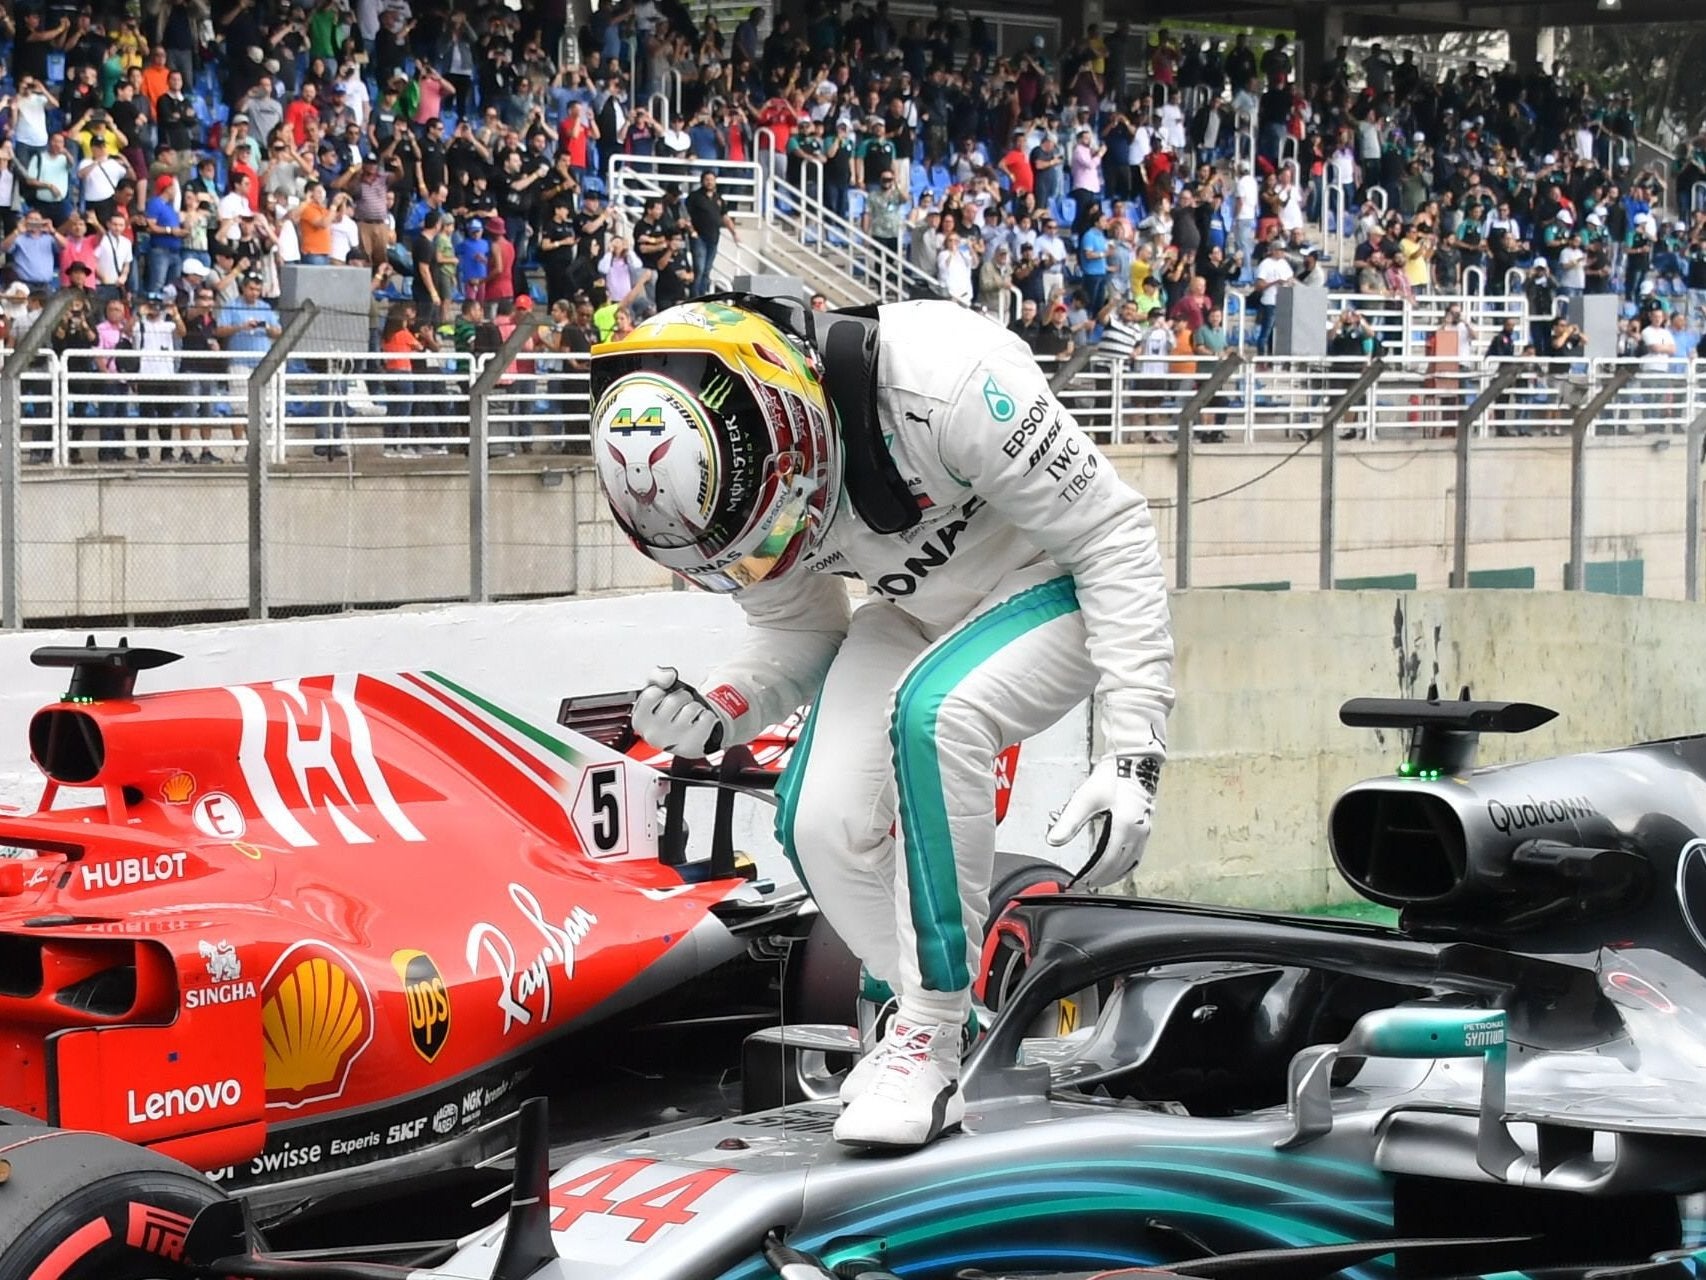 Lewis Hamilton celebrates on top of his Mercedes